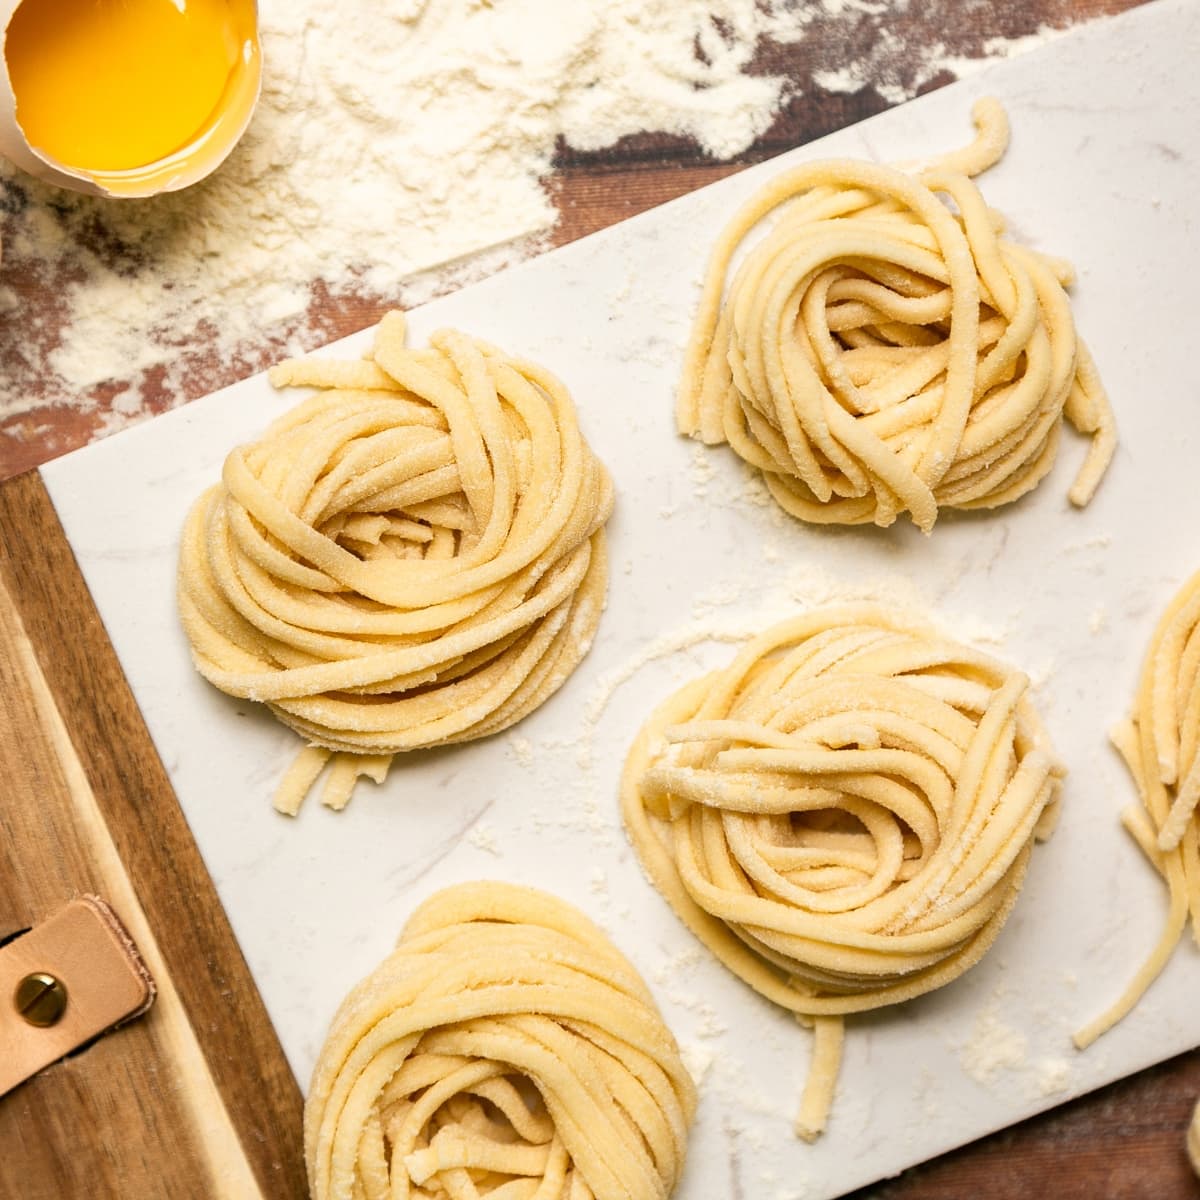 https://www.thepetitecook.com/wp-content/uploads/2015/01/homemade-pasta-recipe.jpg